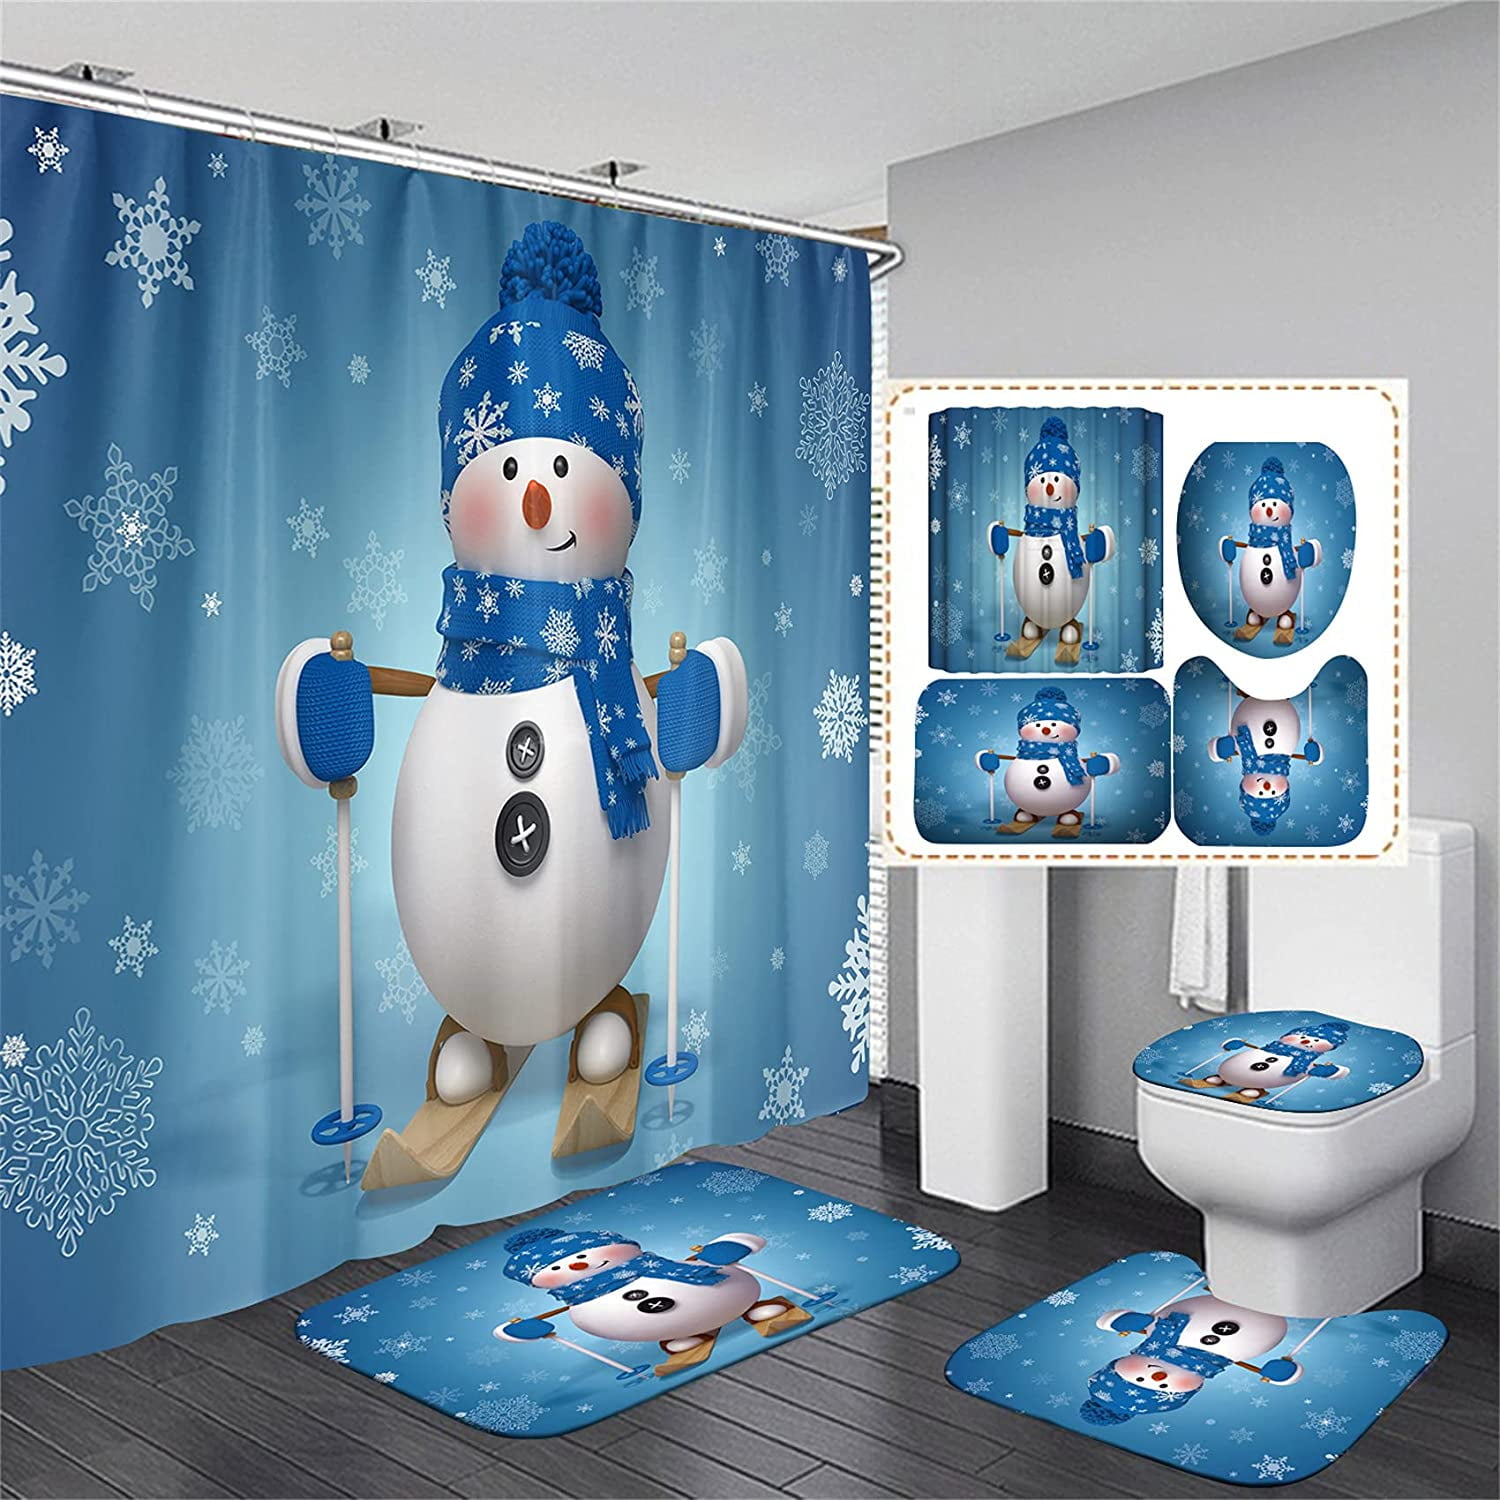 Snowman Bathroom Rugs Set Shower Curtain Non-Slip Toilet Lid Cover Bath Mat Gift 